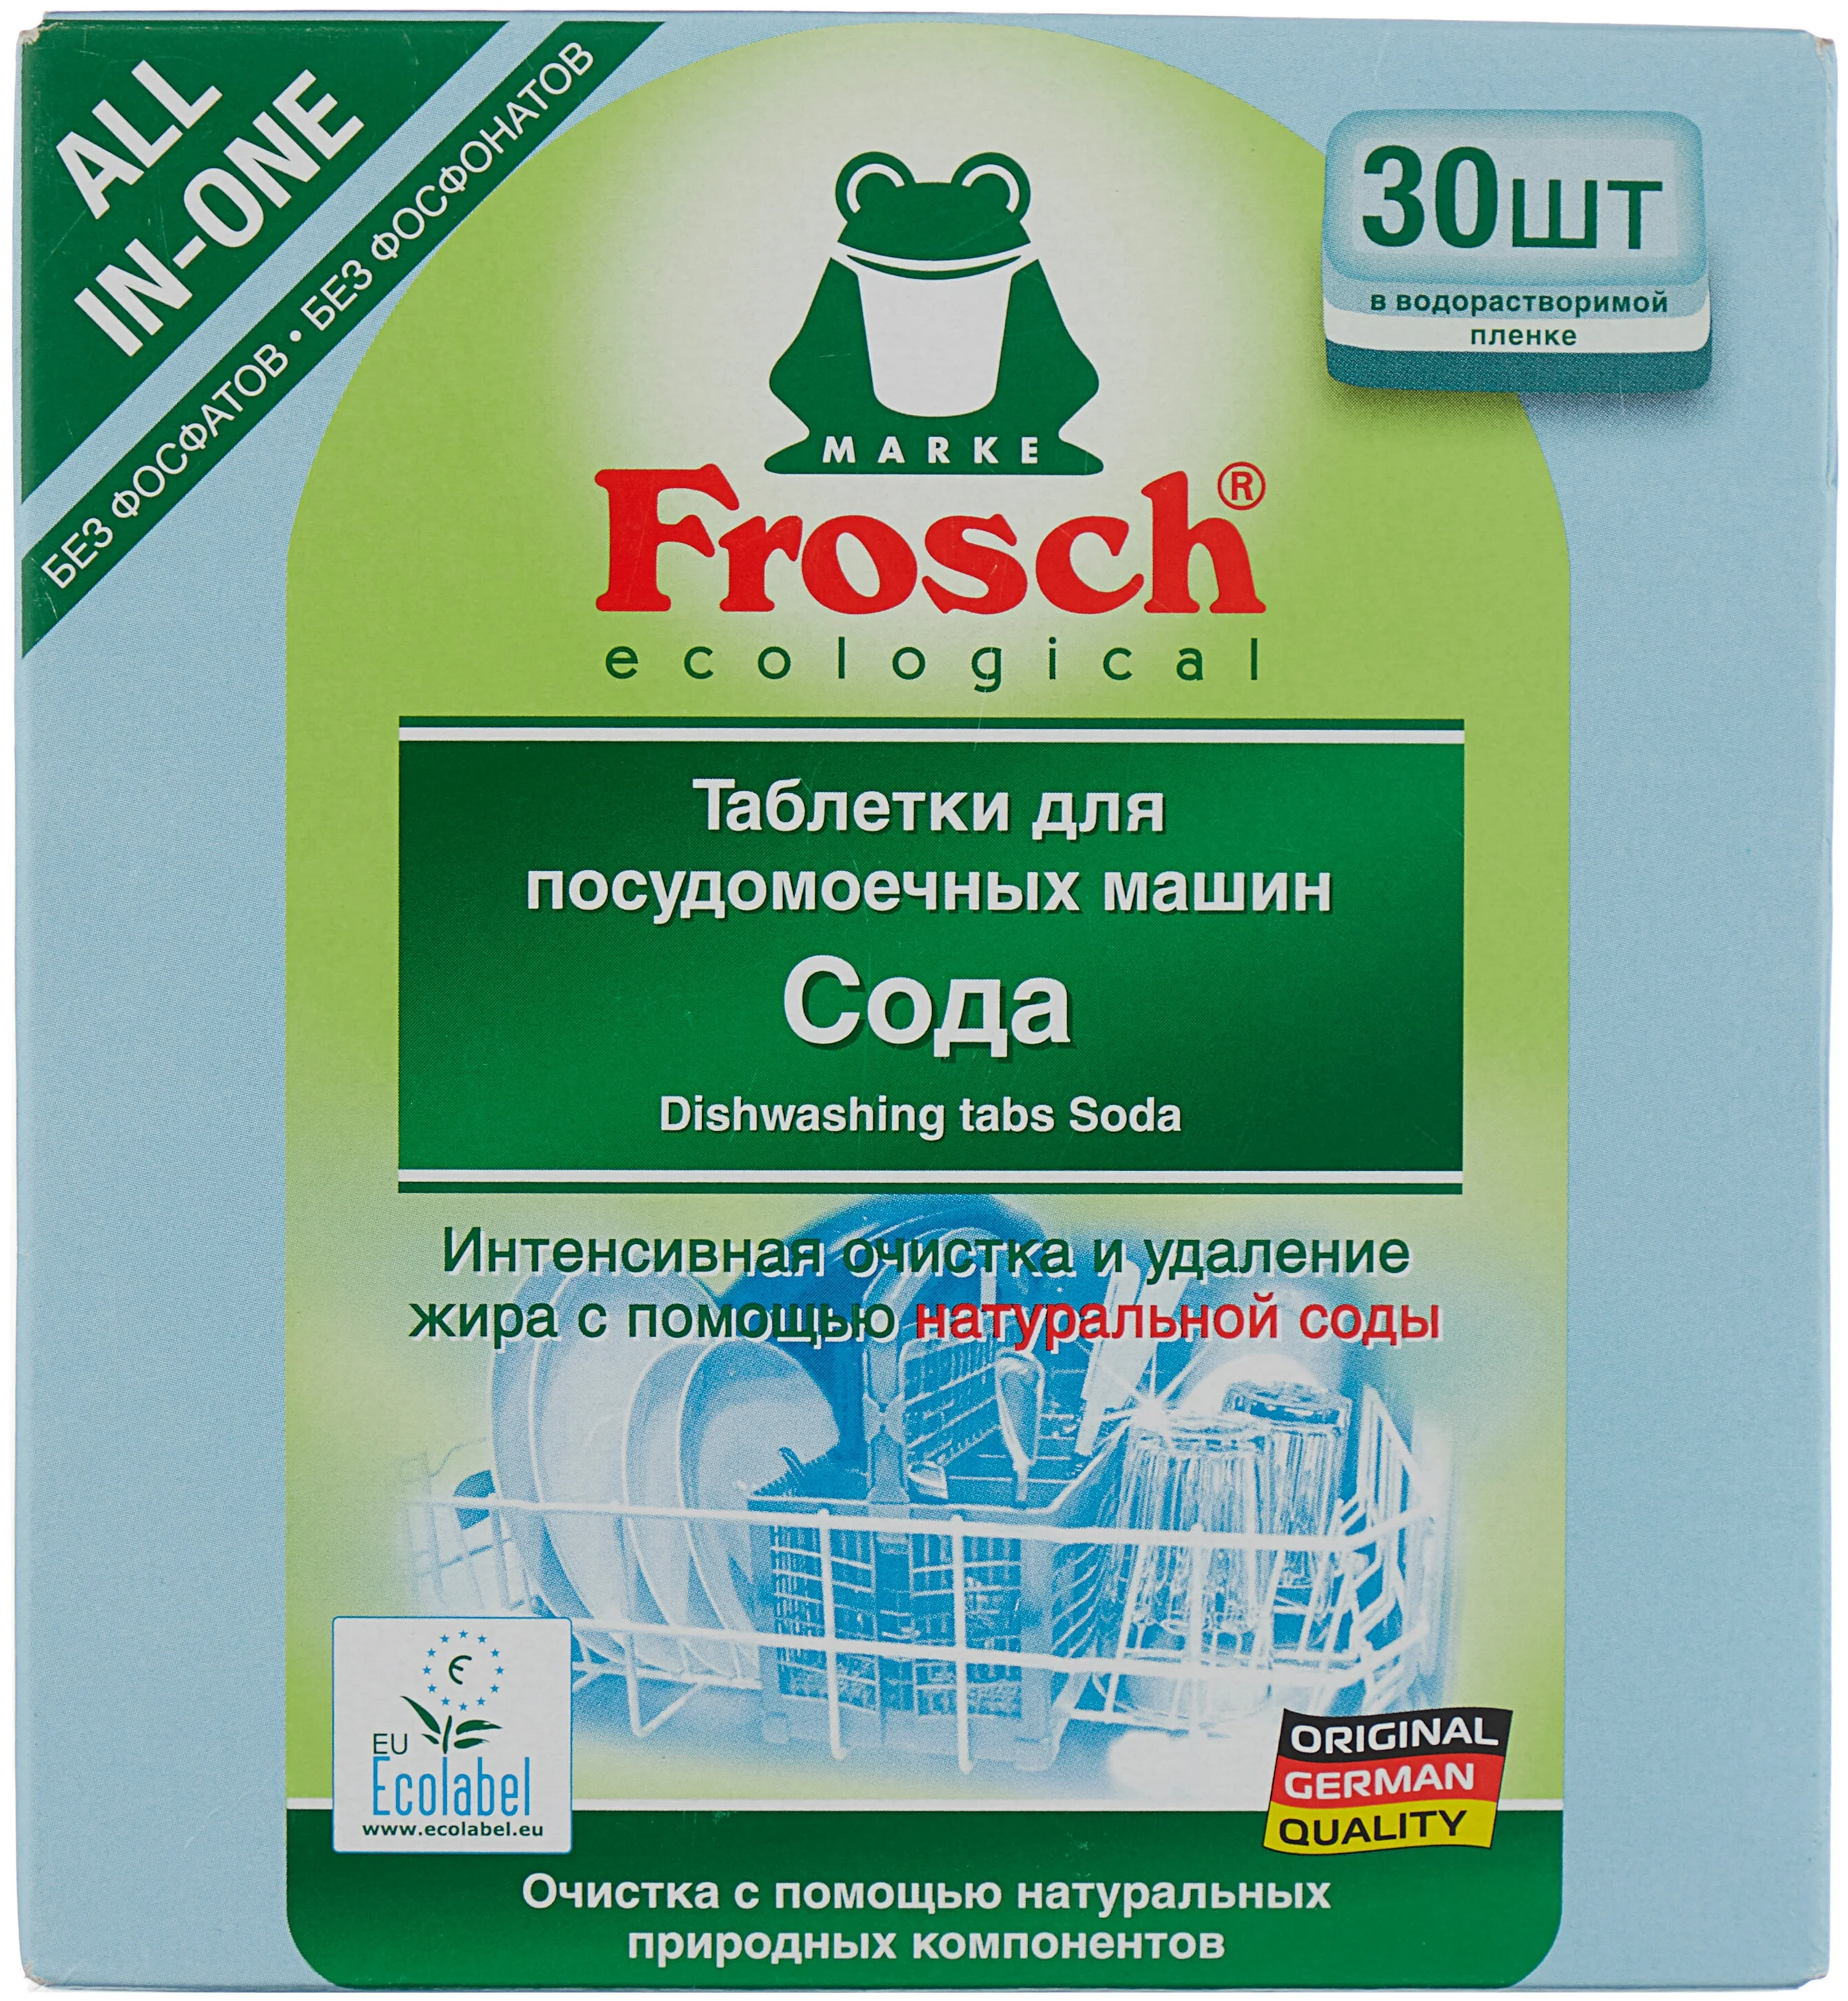 Frosch (сода) - назначение: для мытья посуды, для придания блеска, для стекла, для мытья в холодной воде, для защиты от накипи, для нержавеющей стали